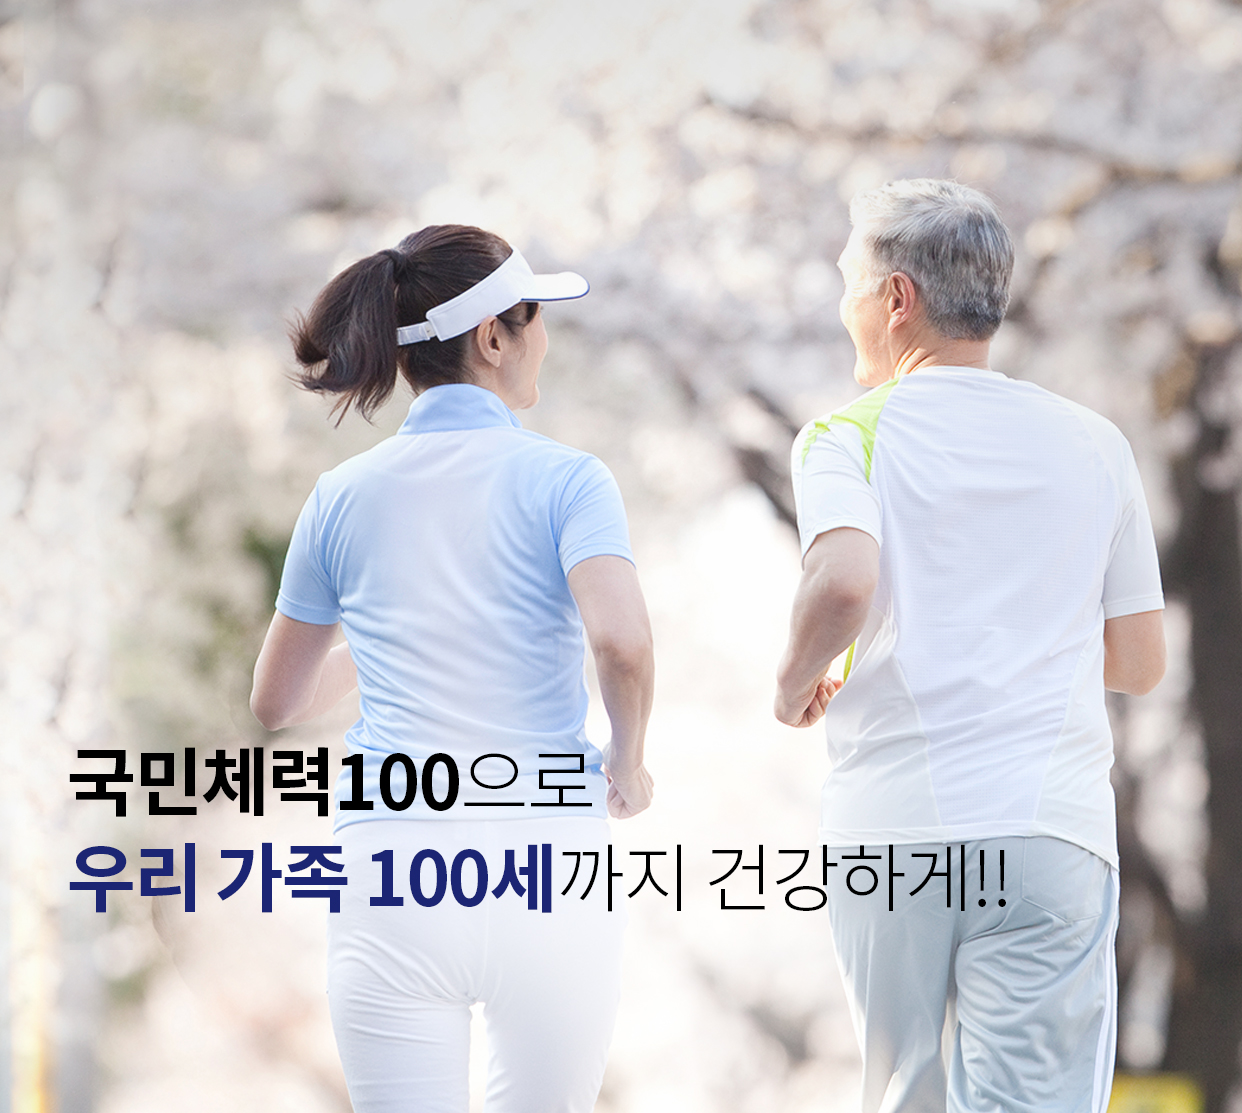 국민체력100으로 우리 가족 100세까지 건강하게!!